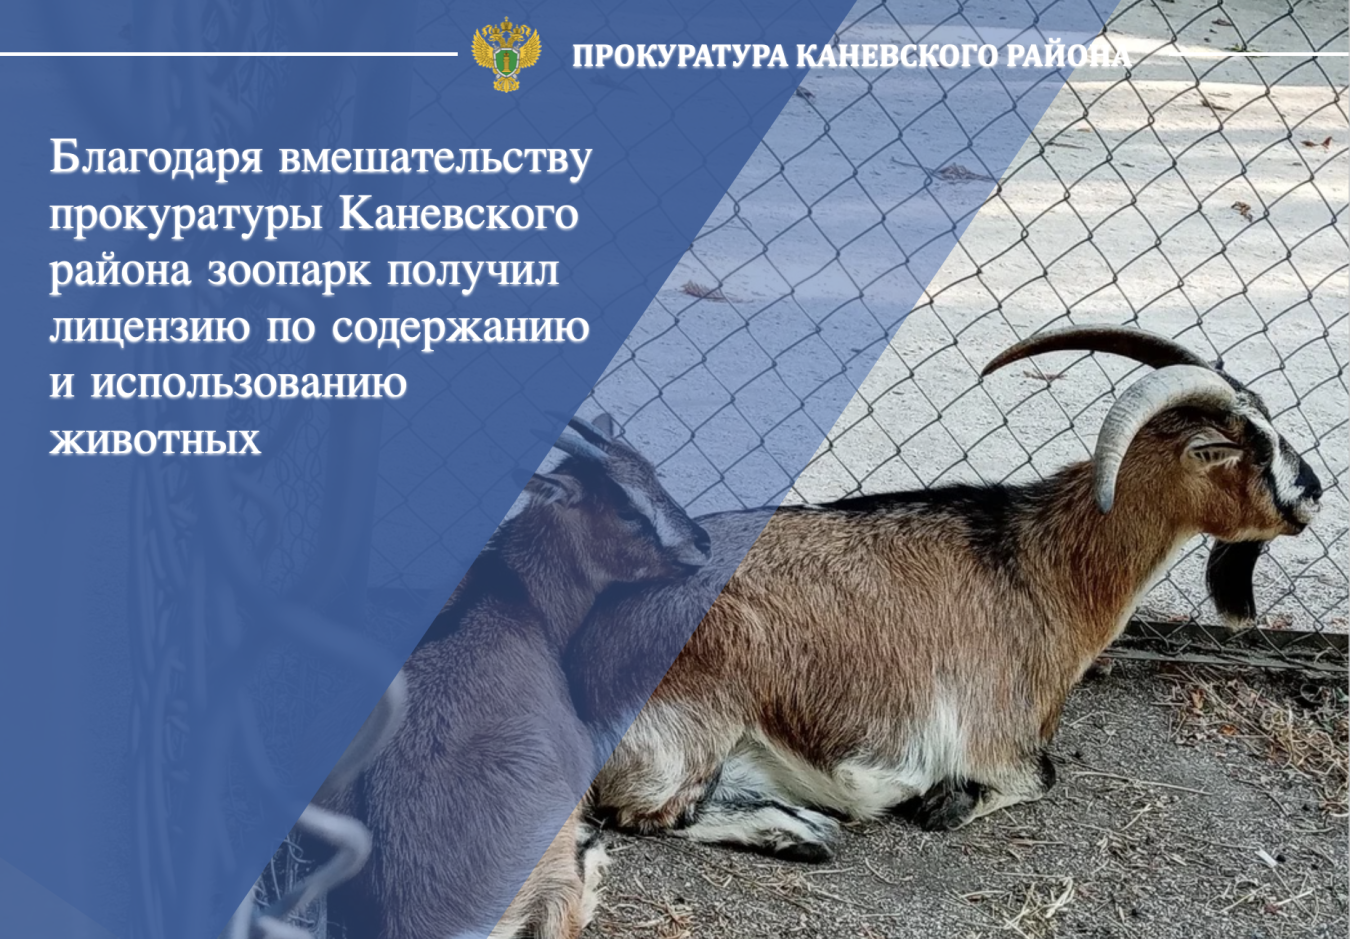 Благодаря вмешательству прокуратуры Каневского района зоопарк получил лицензию по содержанию и использованию животных